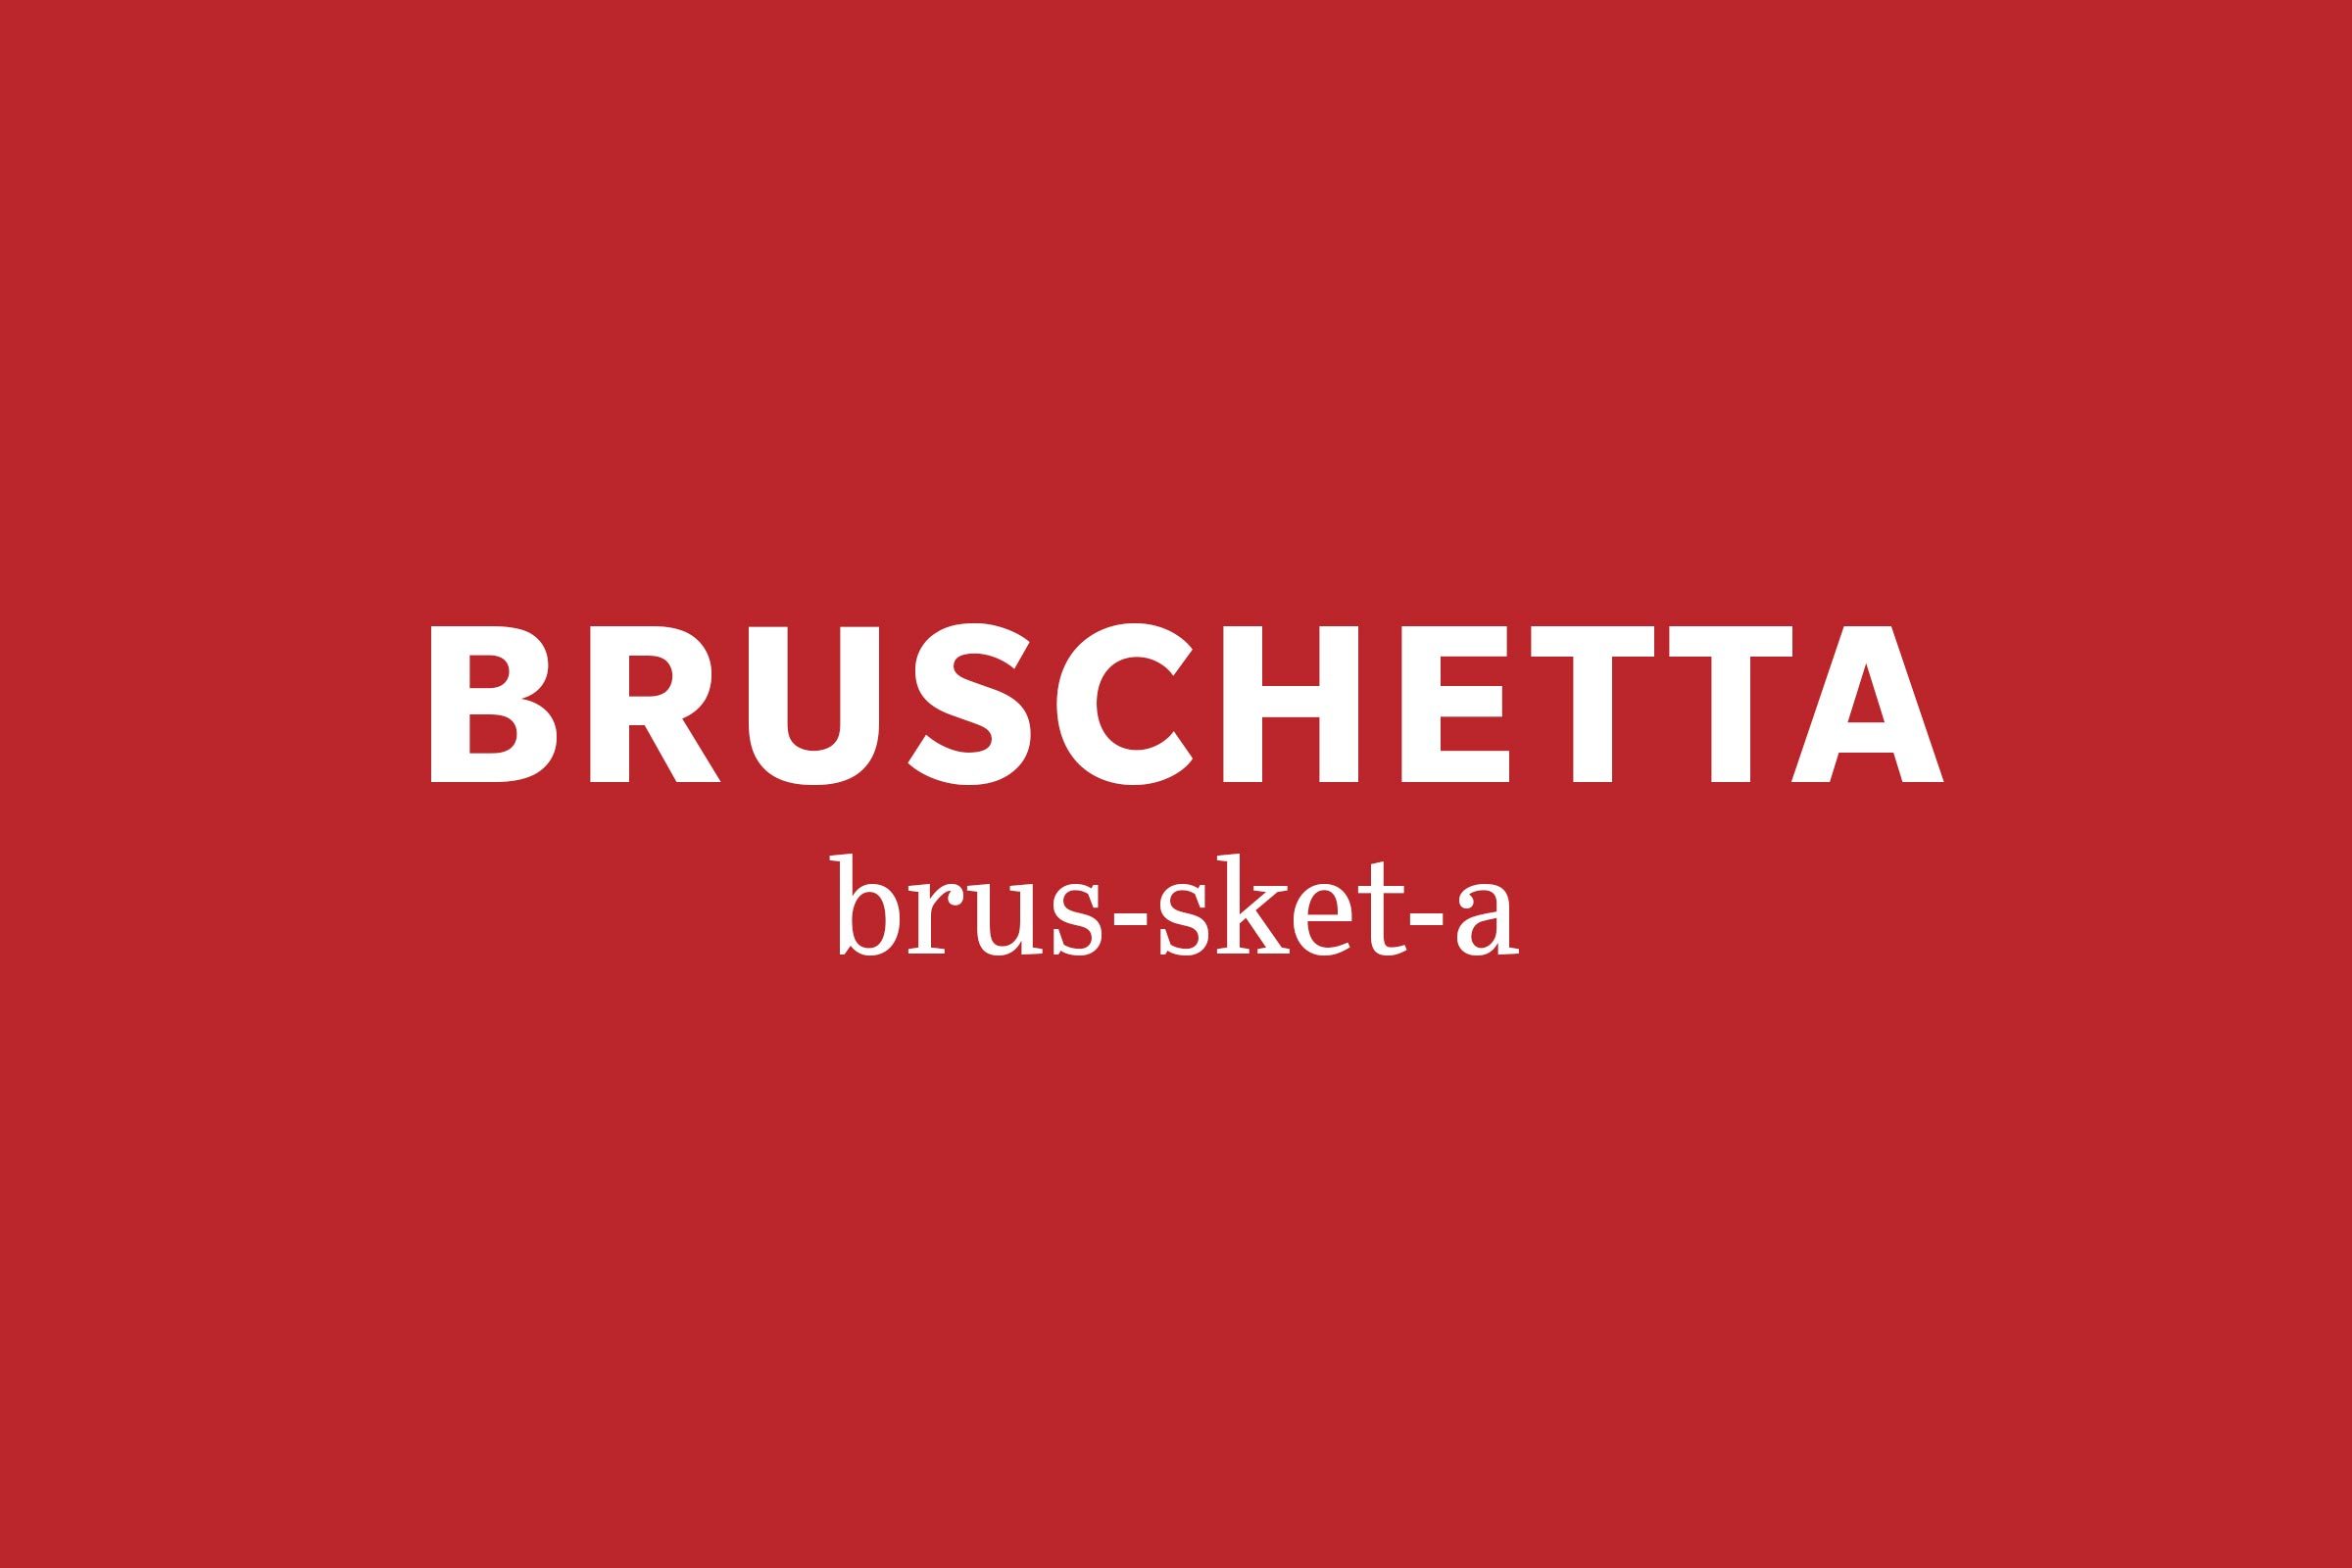 bruschetta pronunciation